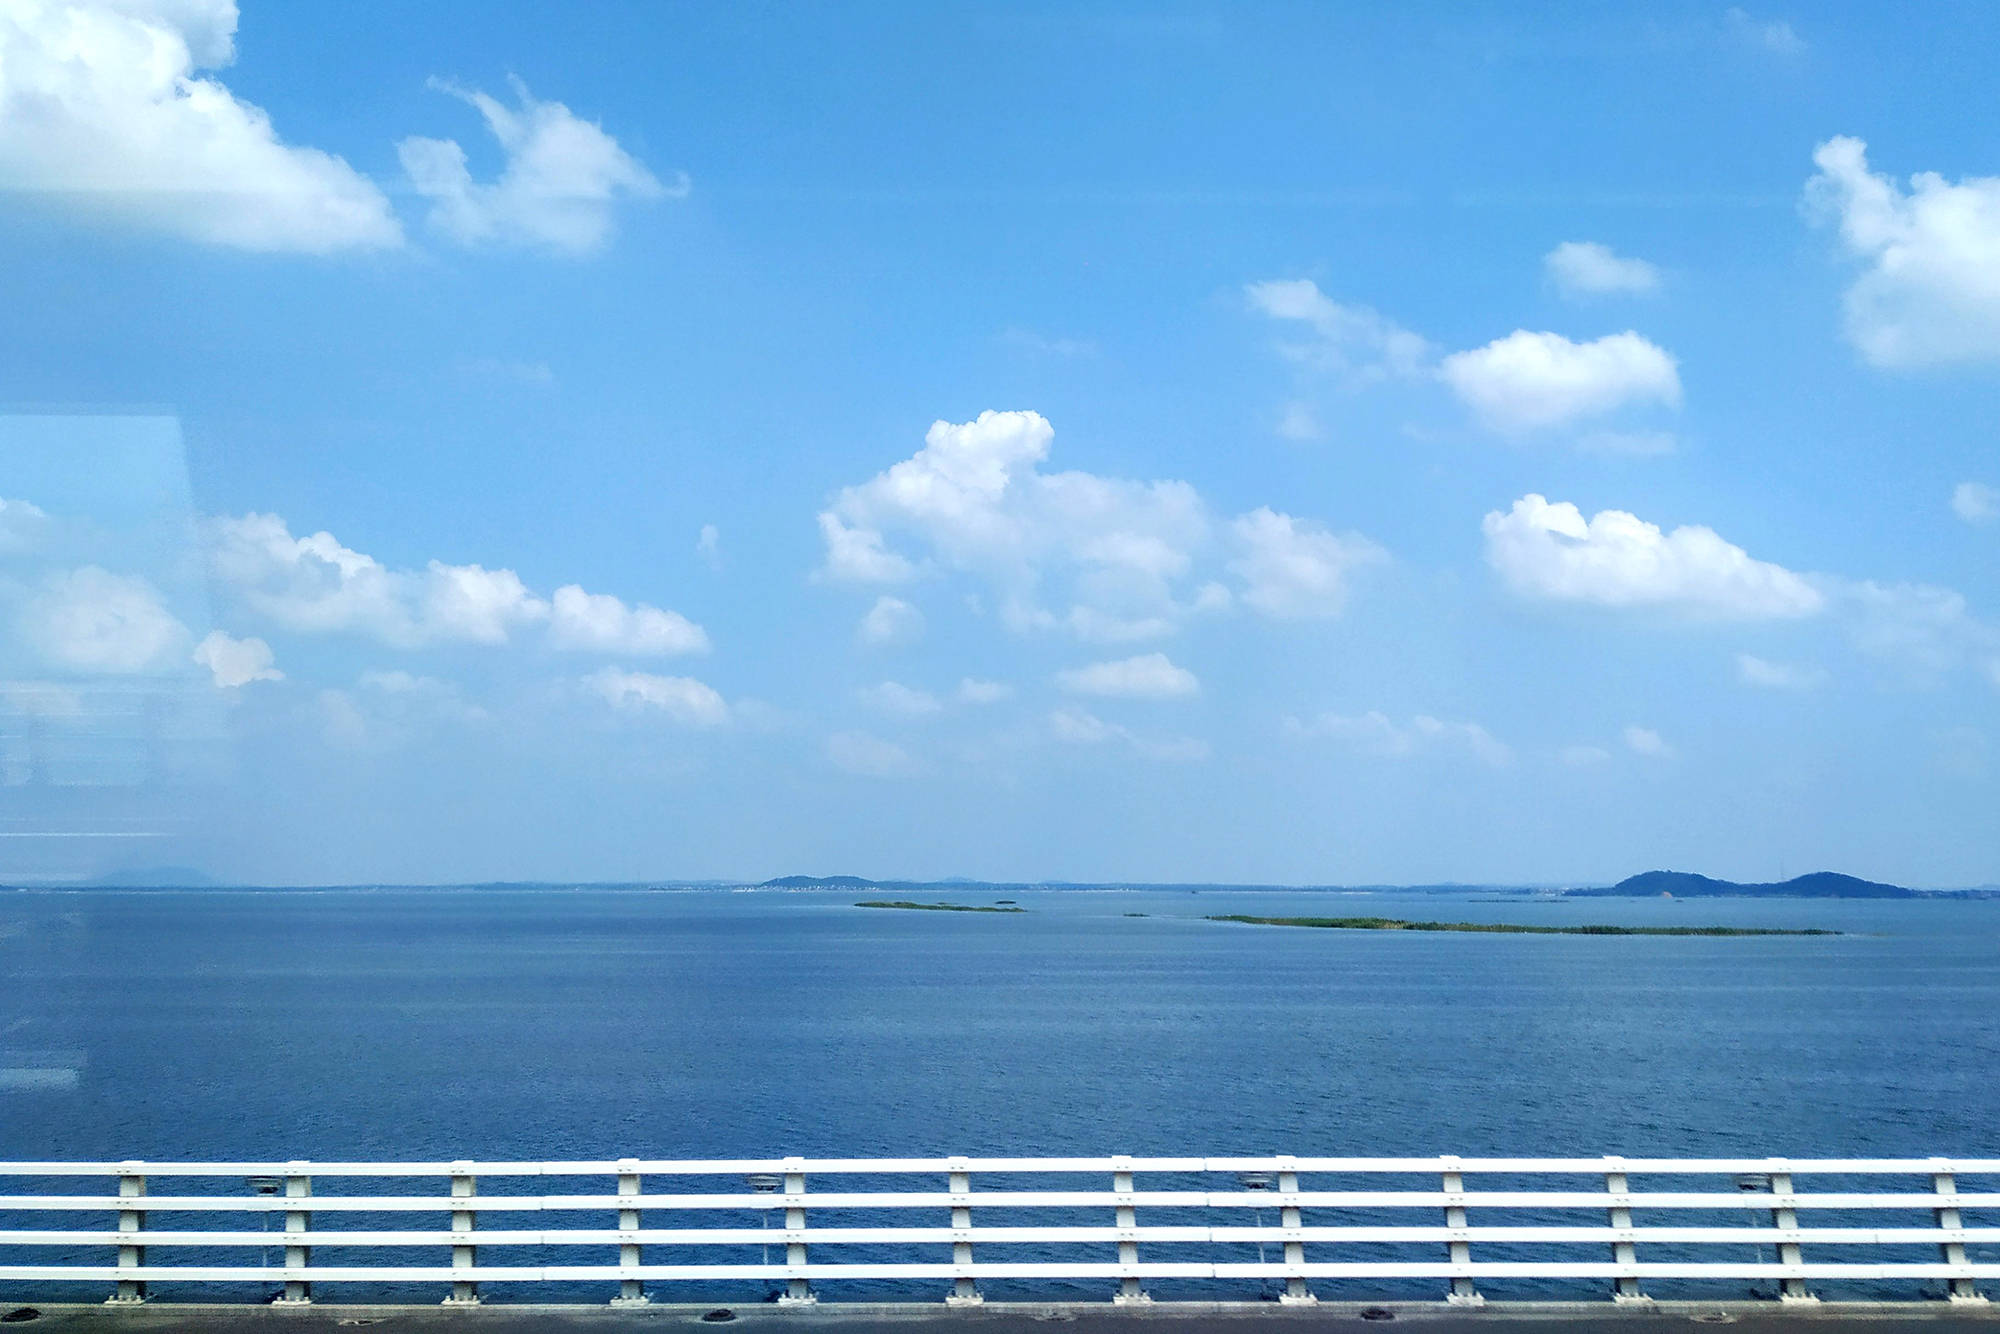 南京也有"天空之镜",就藏在石臼湖,在地铁上就可以观赏美景